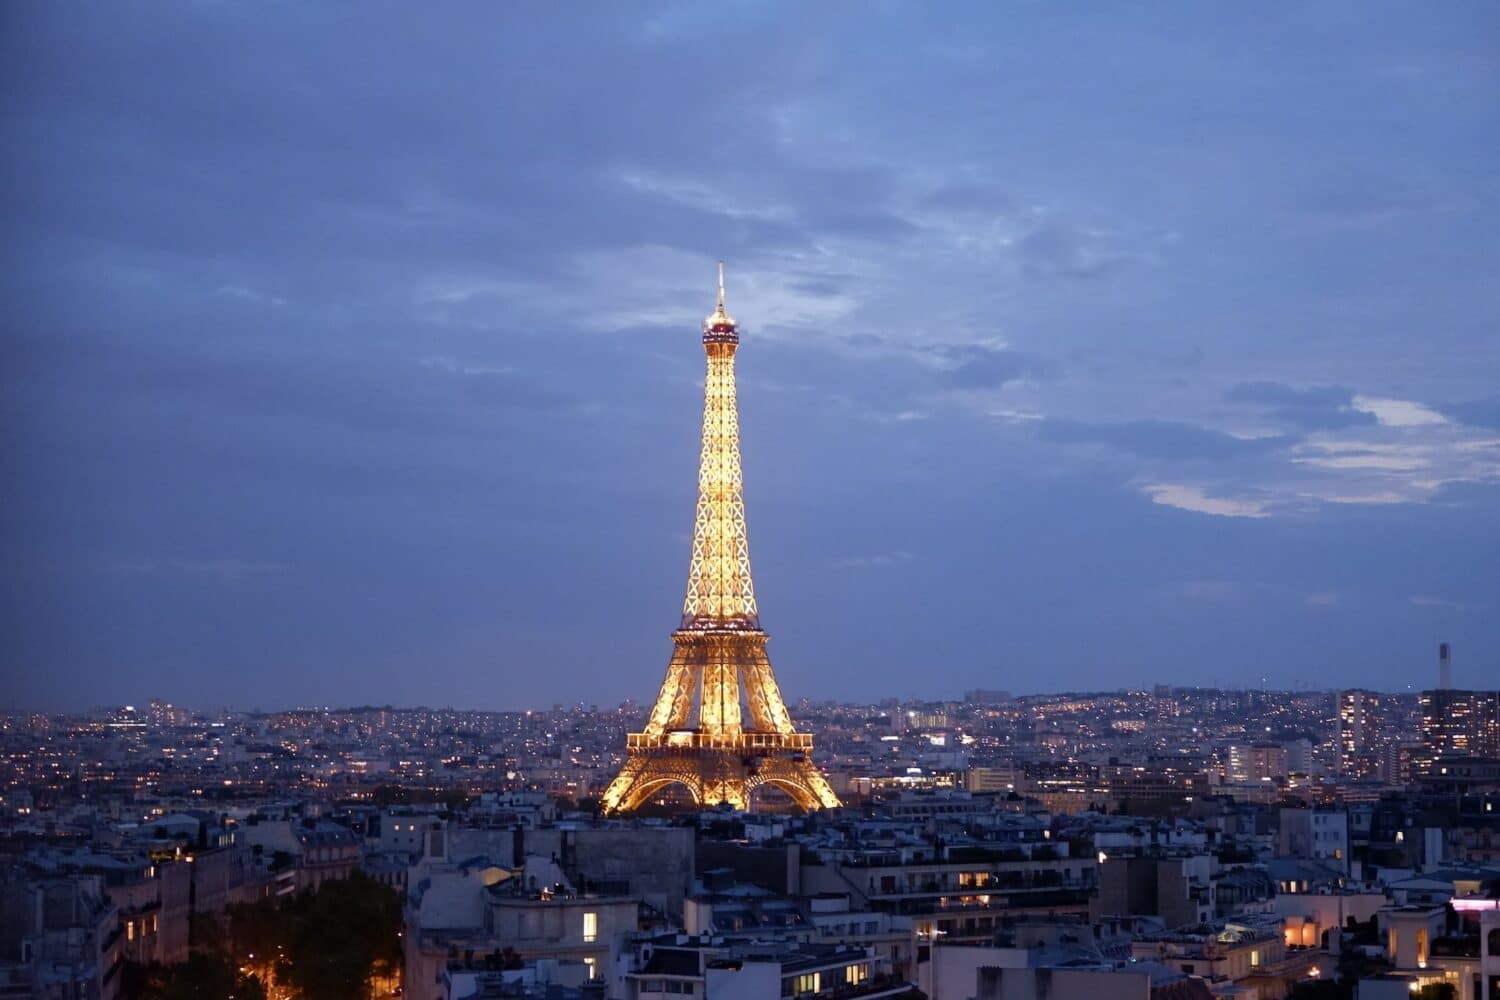 Torre Eiffel, Paris, no centro da imagem ao longe. Ela está toda iluminada durante o anoitecer com várias casas e prédios ao seu redor. - Foto: Kateryna T via Unsplash